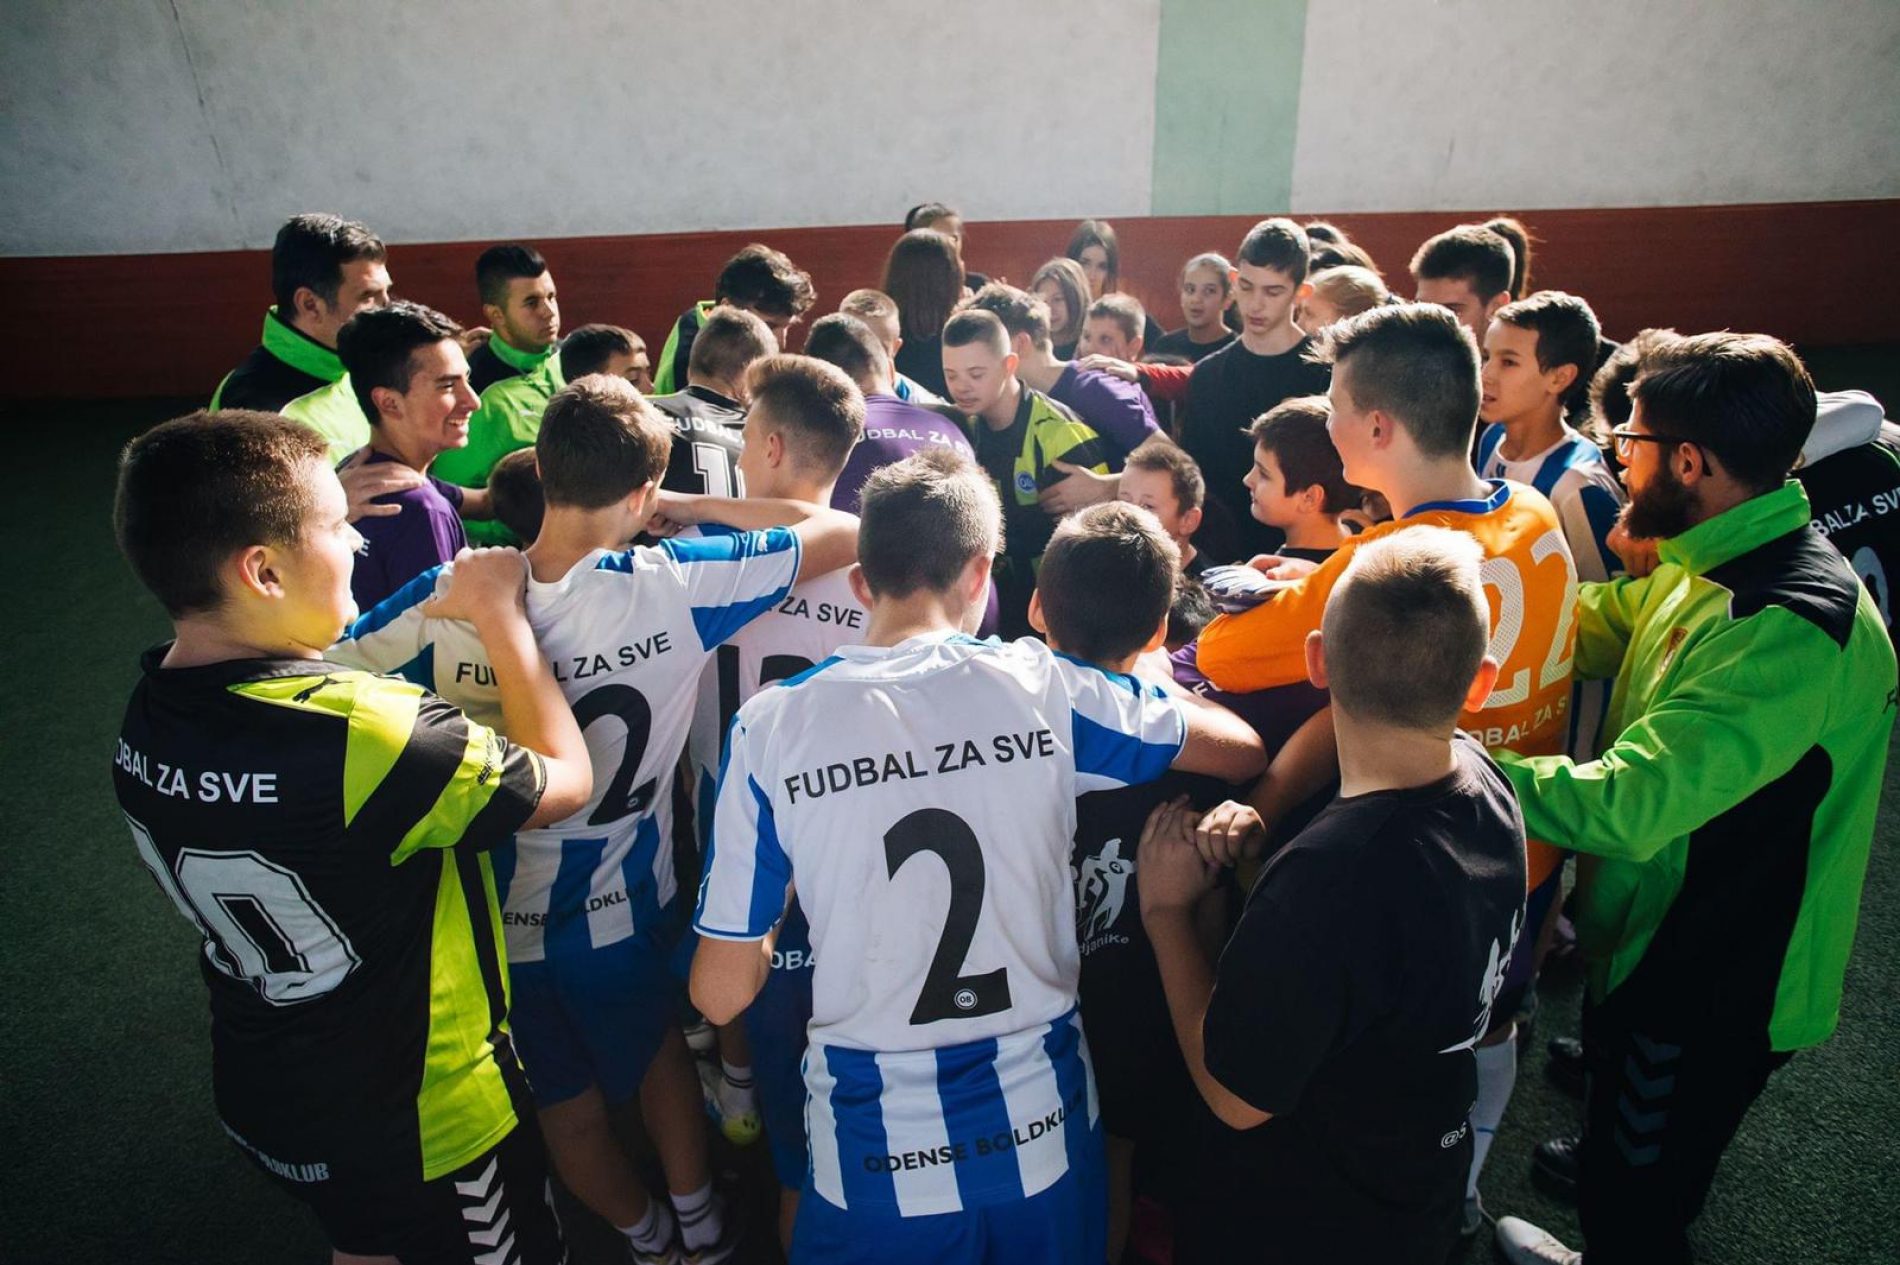 Bosna ima što drugi namaju: Fudbalski klub Respekt pruža jednakost i mogućnost za svako dijete